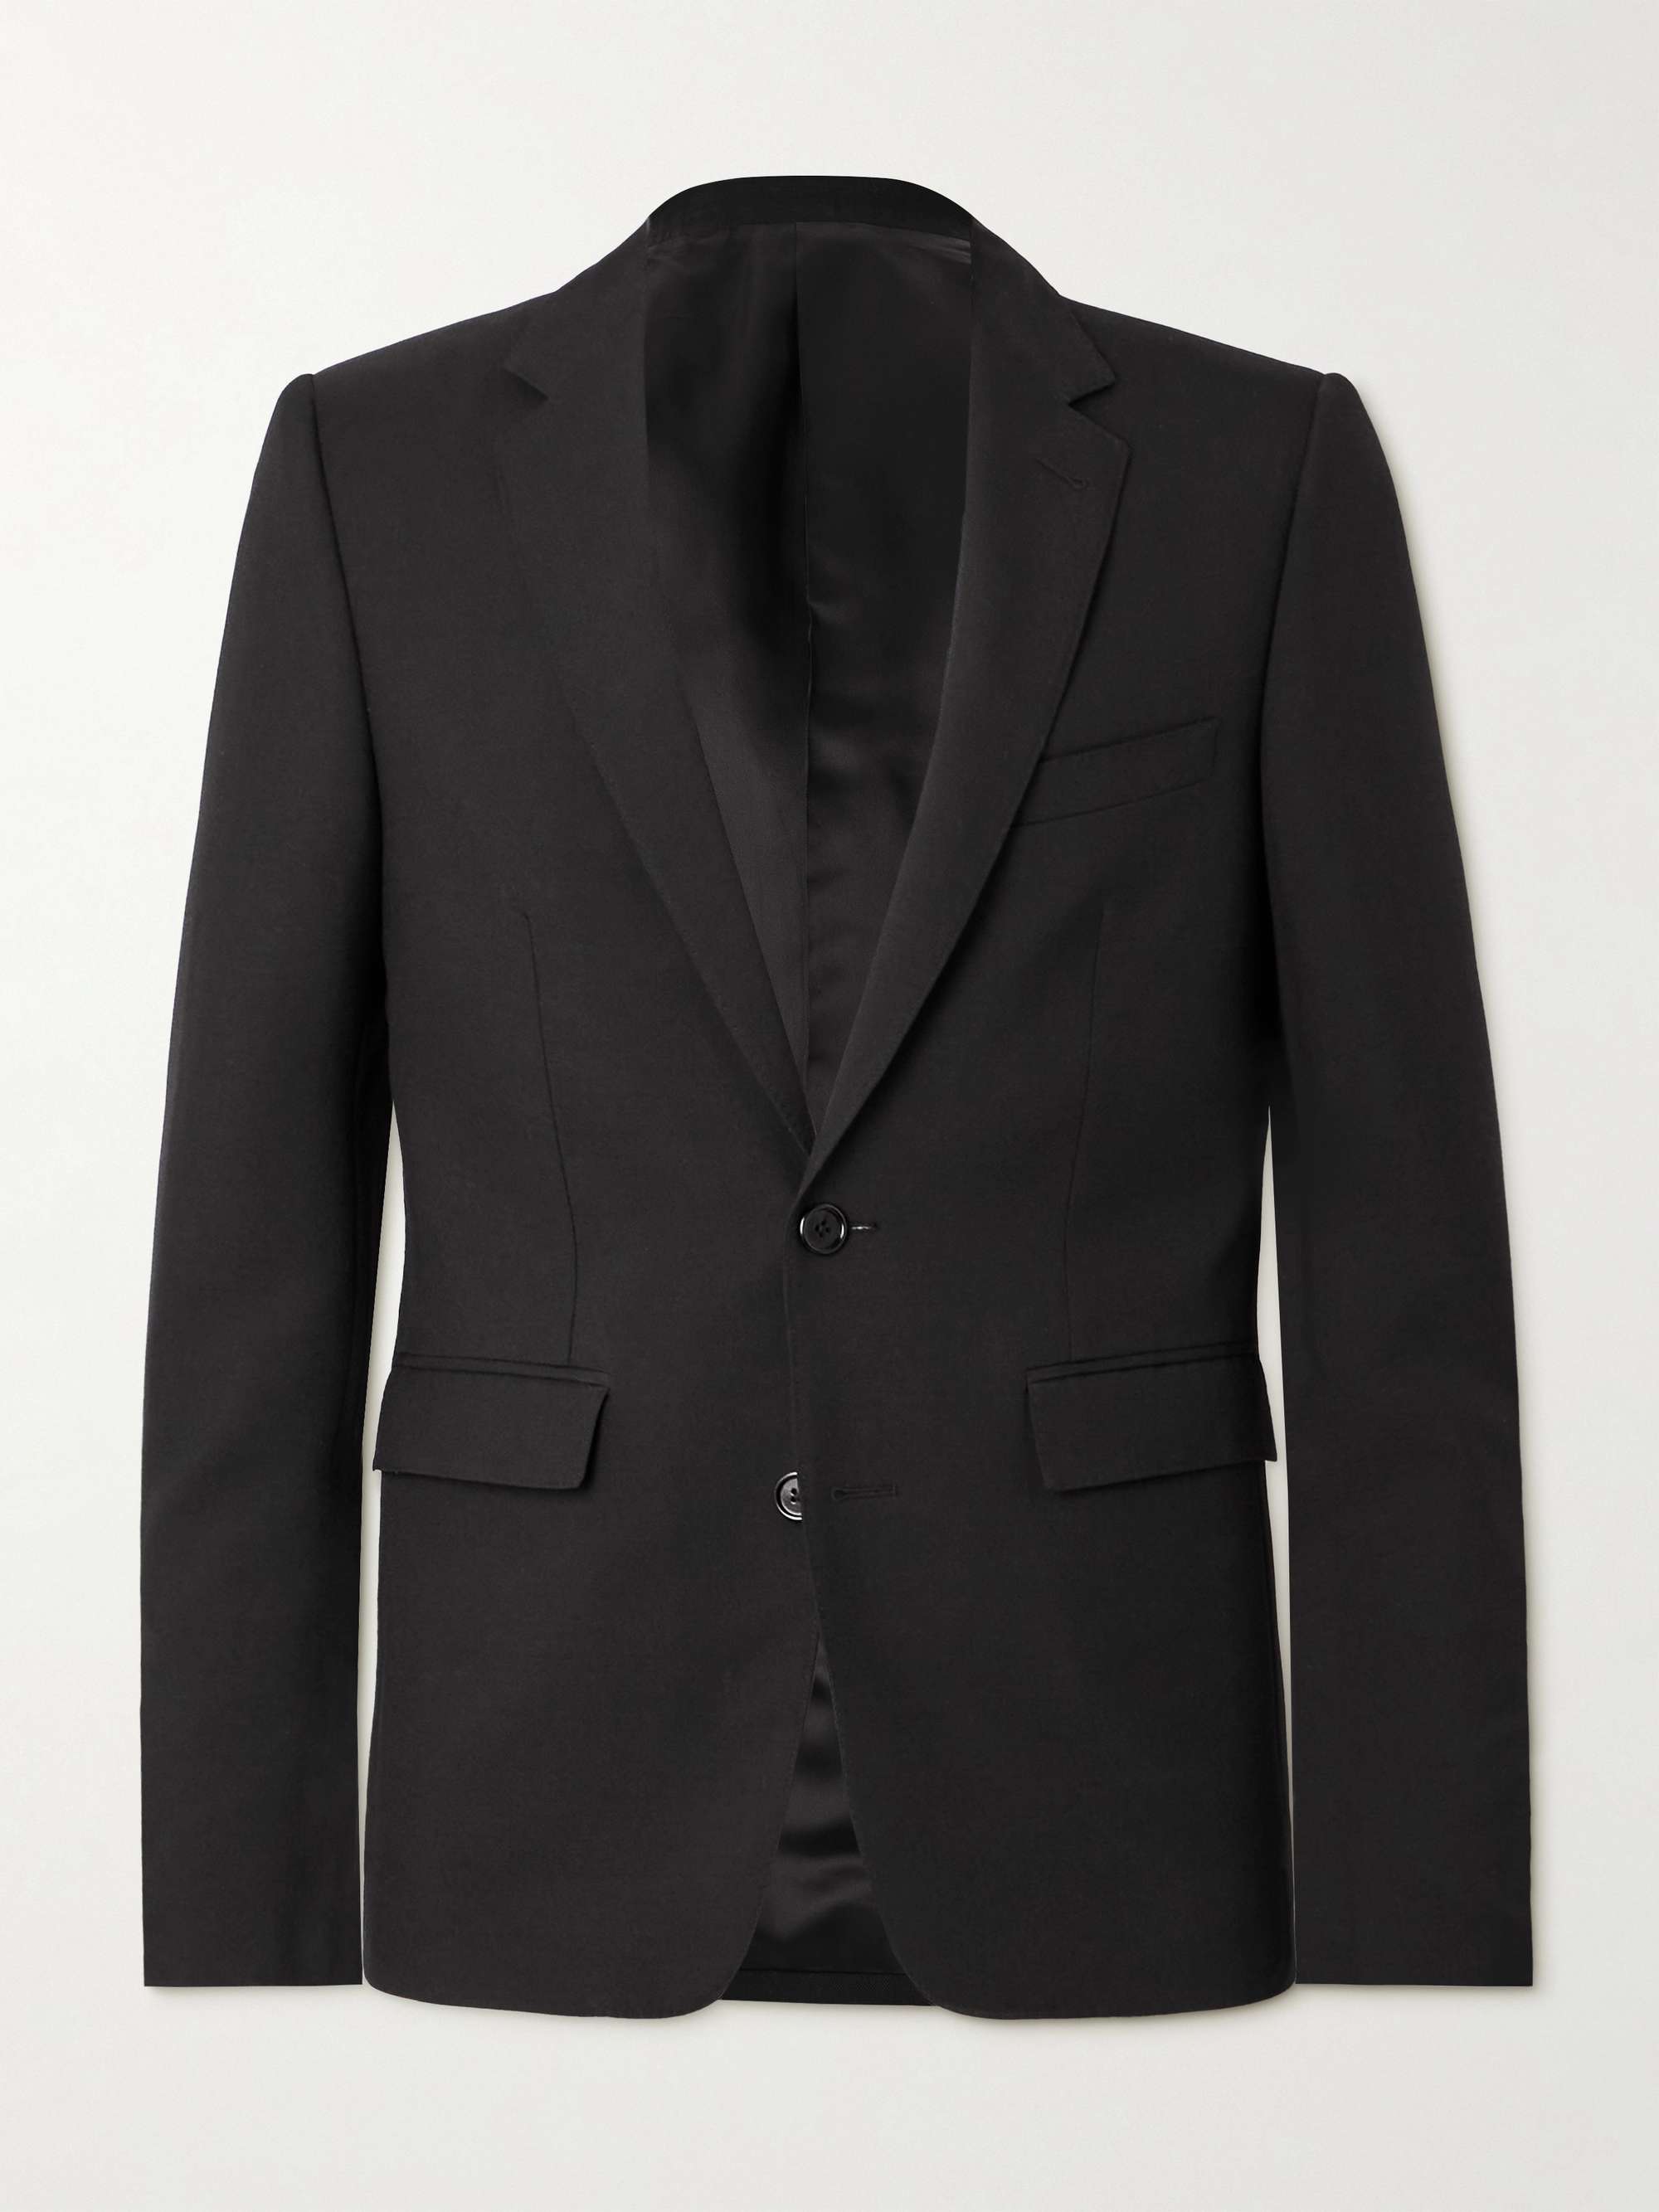 CELINE HOMME Slim-Fit Wool-Gabardine Blazer for Men | MR PORTER